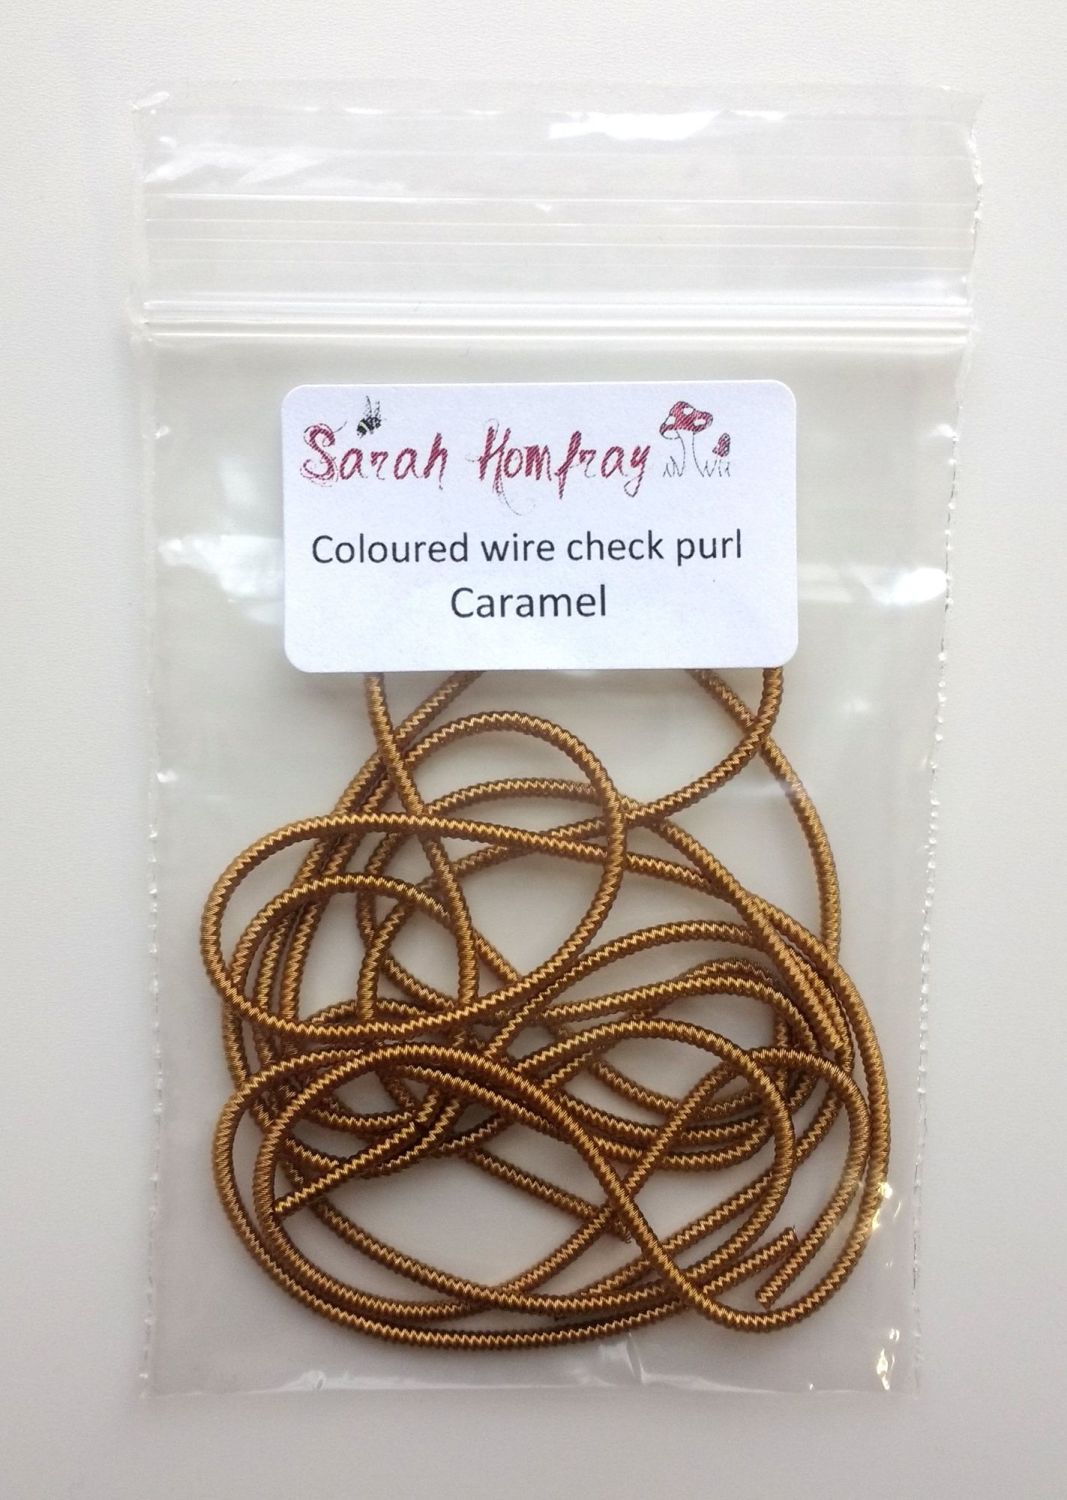 NEW! Coloured Wire check purl no.6 - Caramel